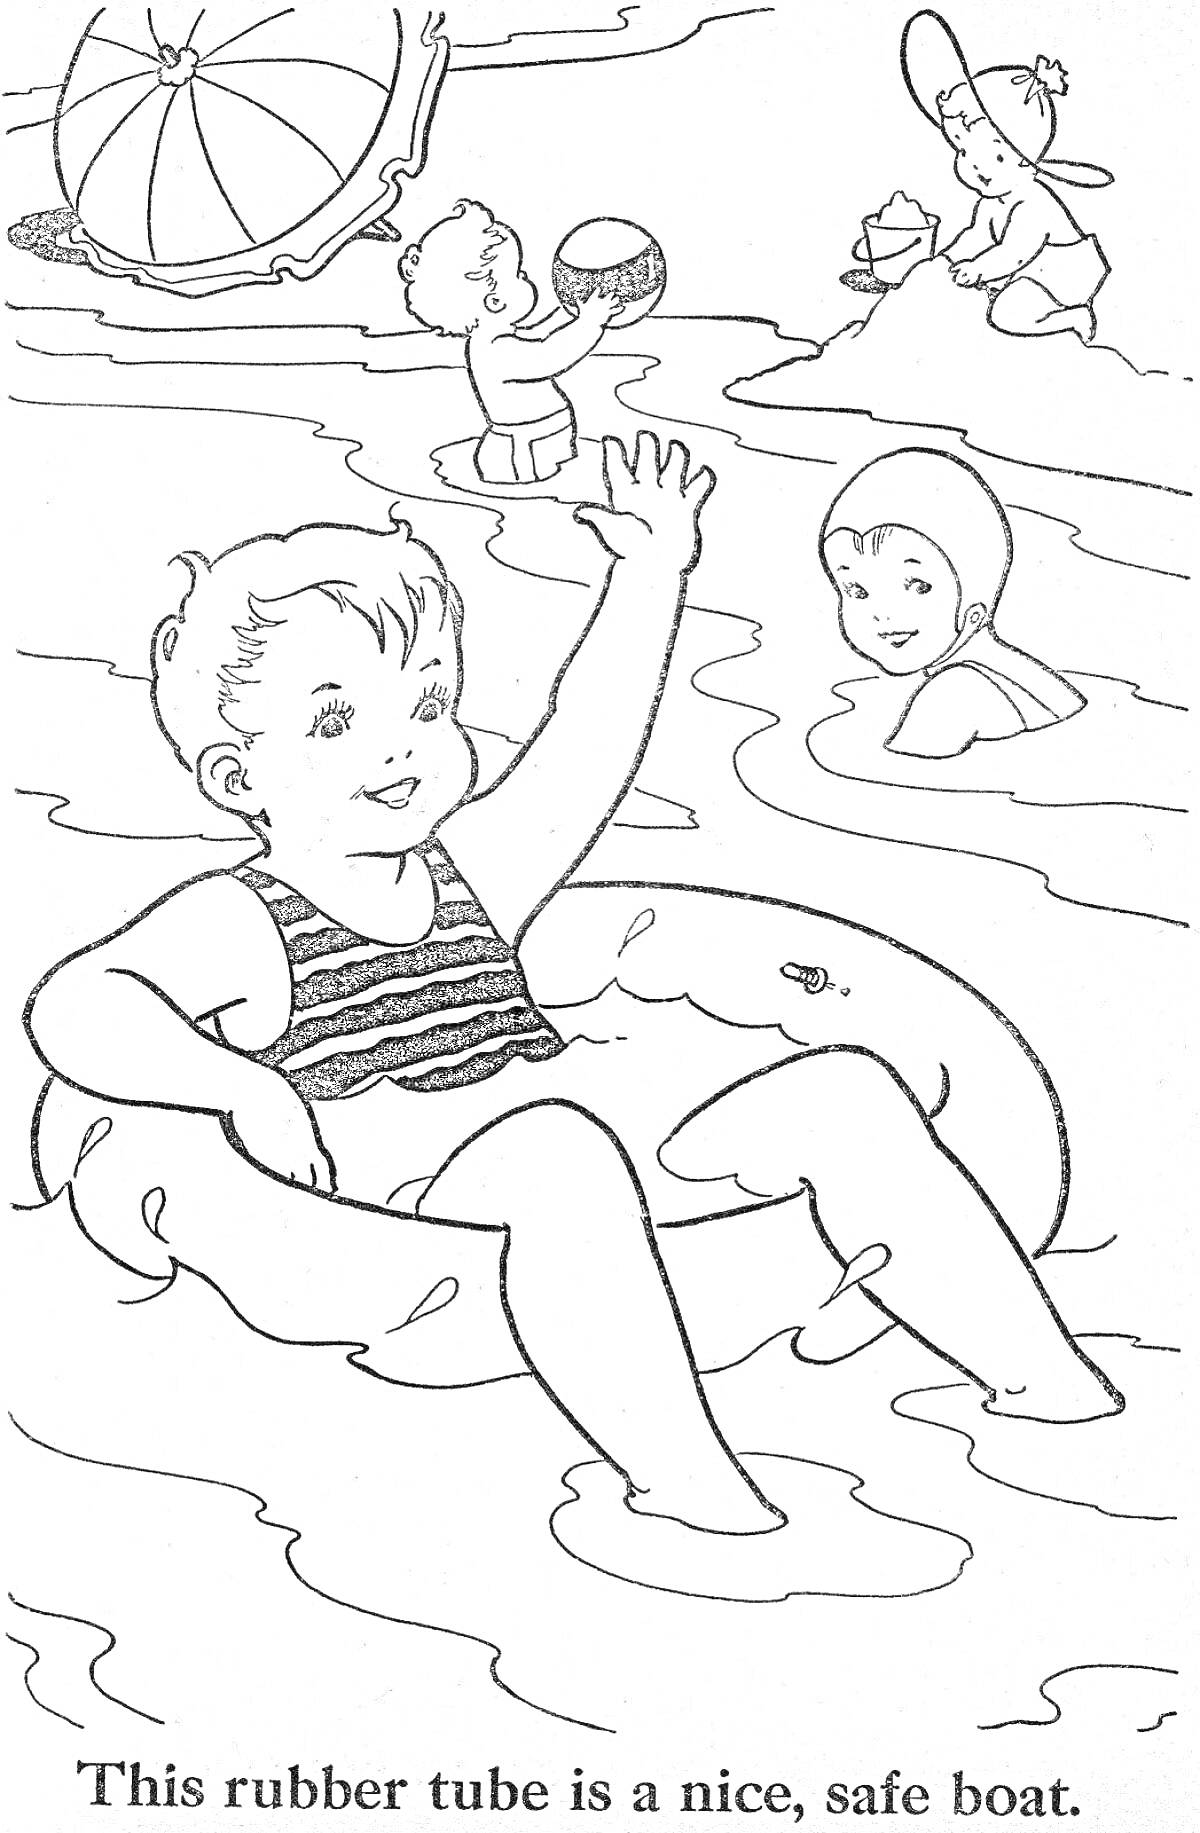 Раскраска Дети на отдыхе у воды с резиновой надувной лодкой, мячом, пляжным зонтом и игрушками